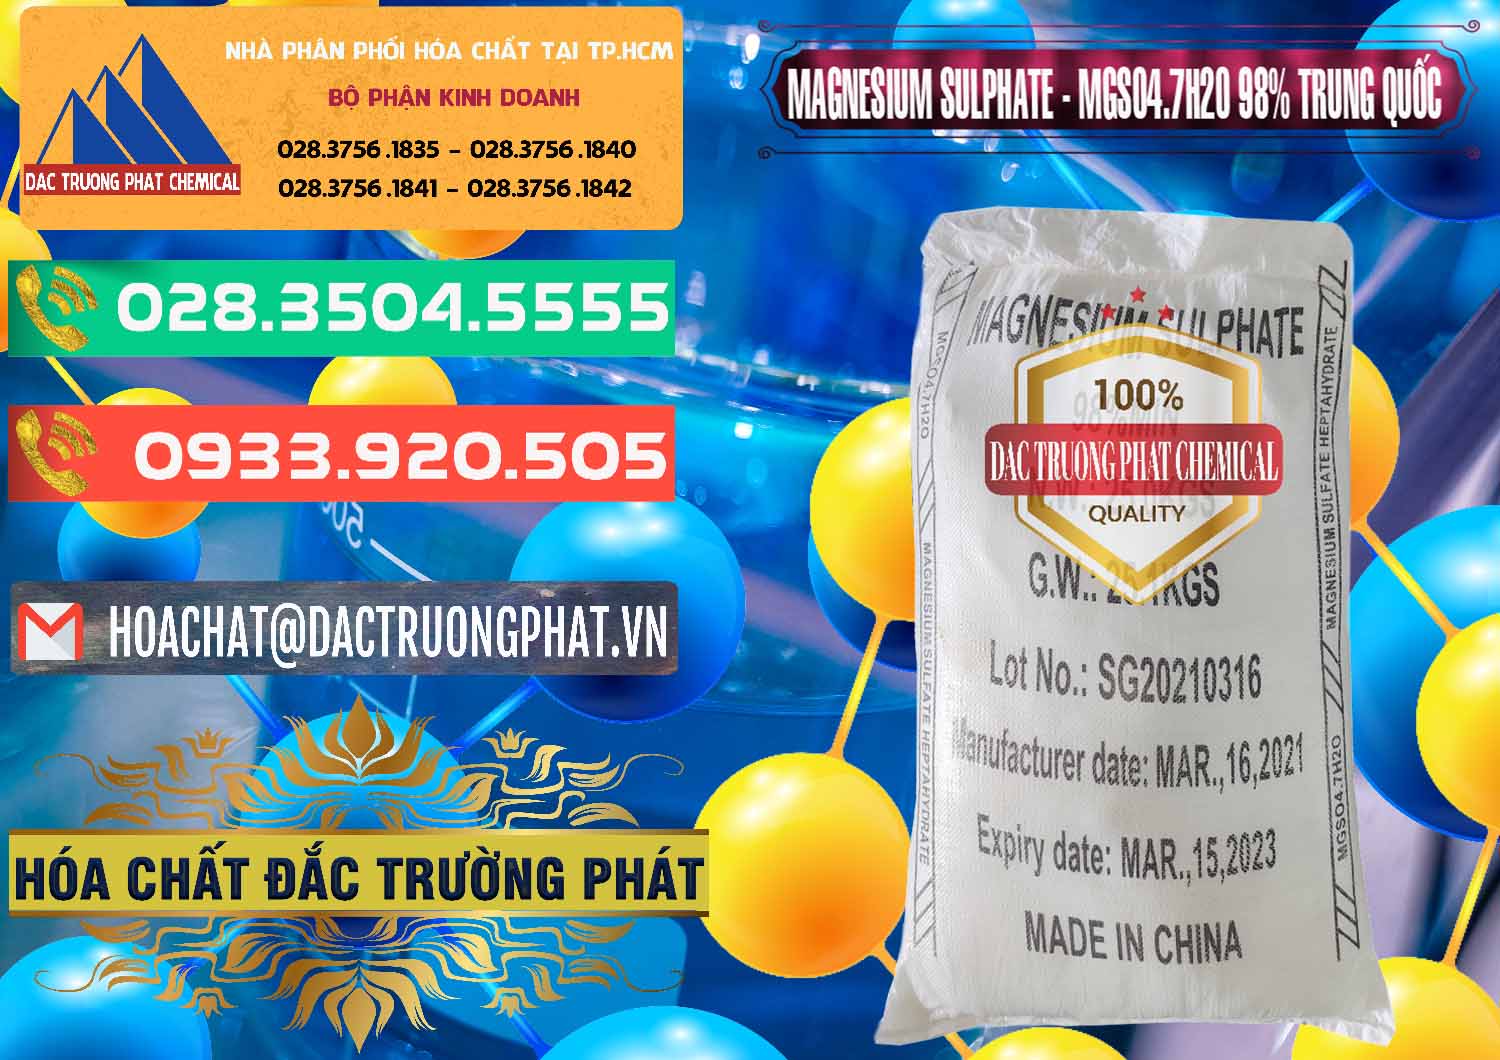 Chuyên cung ứng và bán MGSO4.7H2O – Magnesium Sulphate 98% Trung Quốc China - 0229 - Cty cung cấp và kinh doanh hóa chất tại TP.HCM - congtyhoachat.com.vn